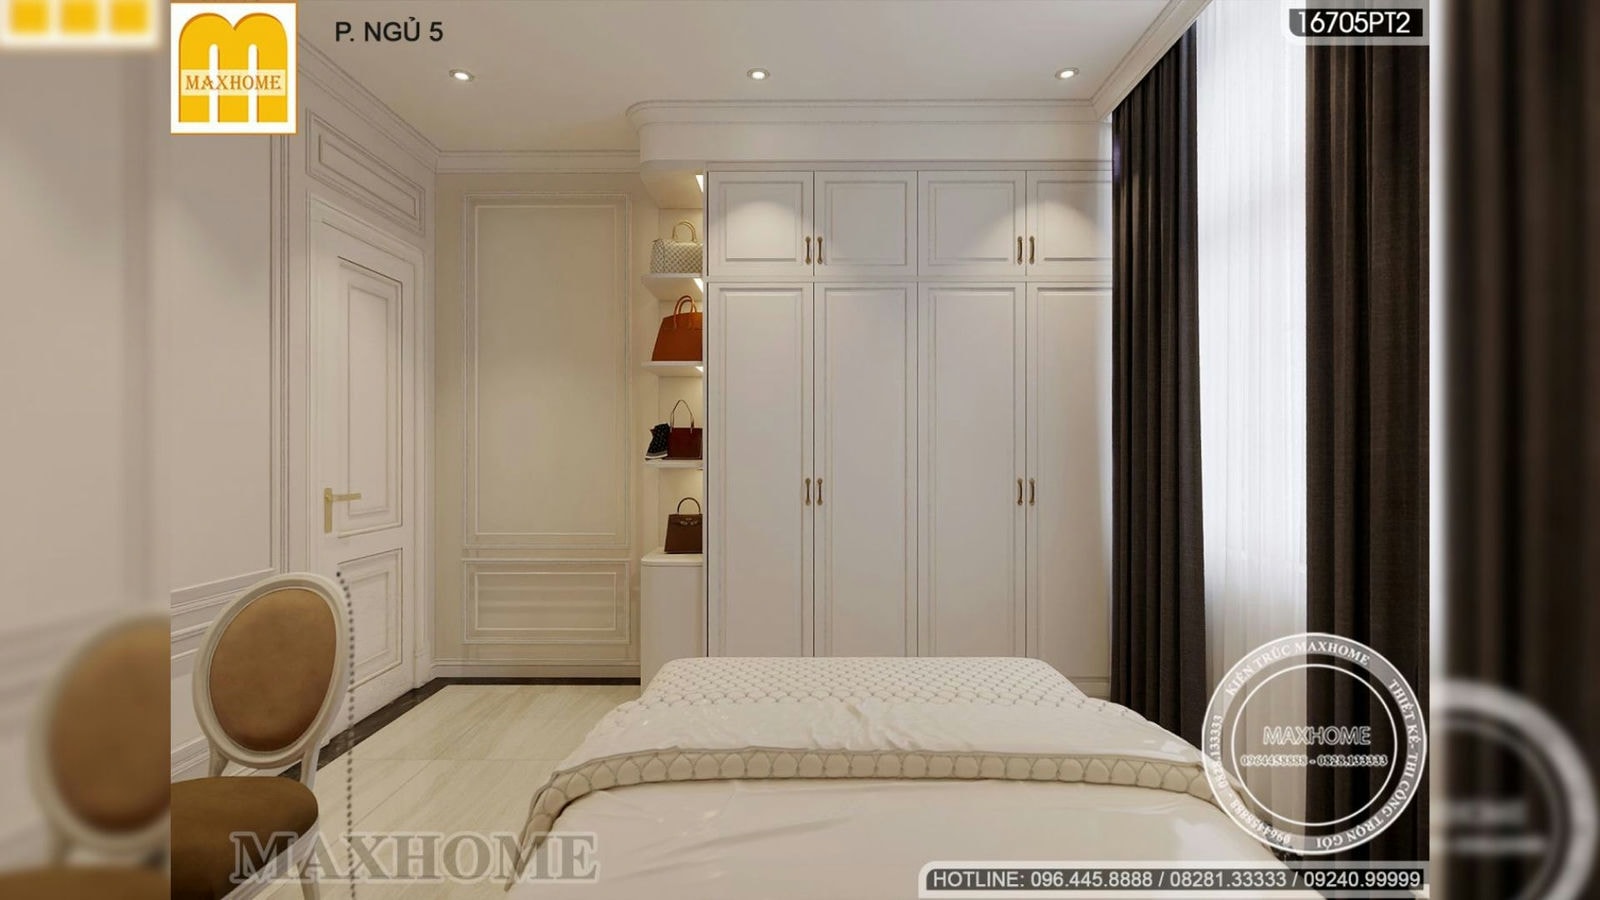 Mẫu thiết kế nội thất biệt thự cao cấp tân cổ điển đẹp sang trọng | MH02072